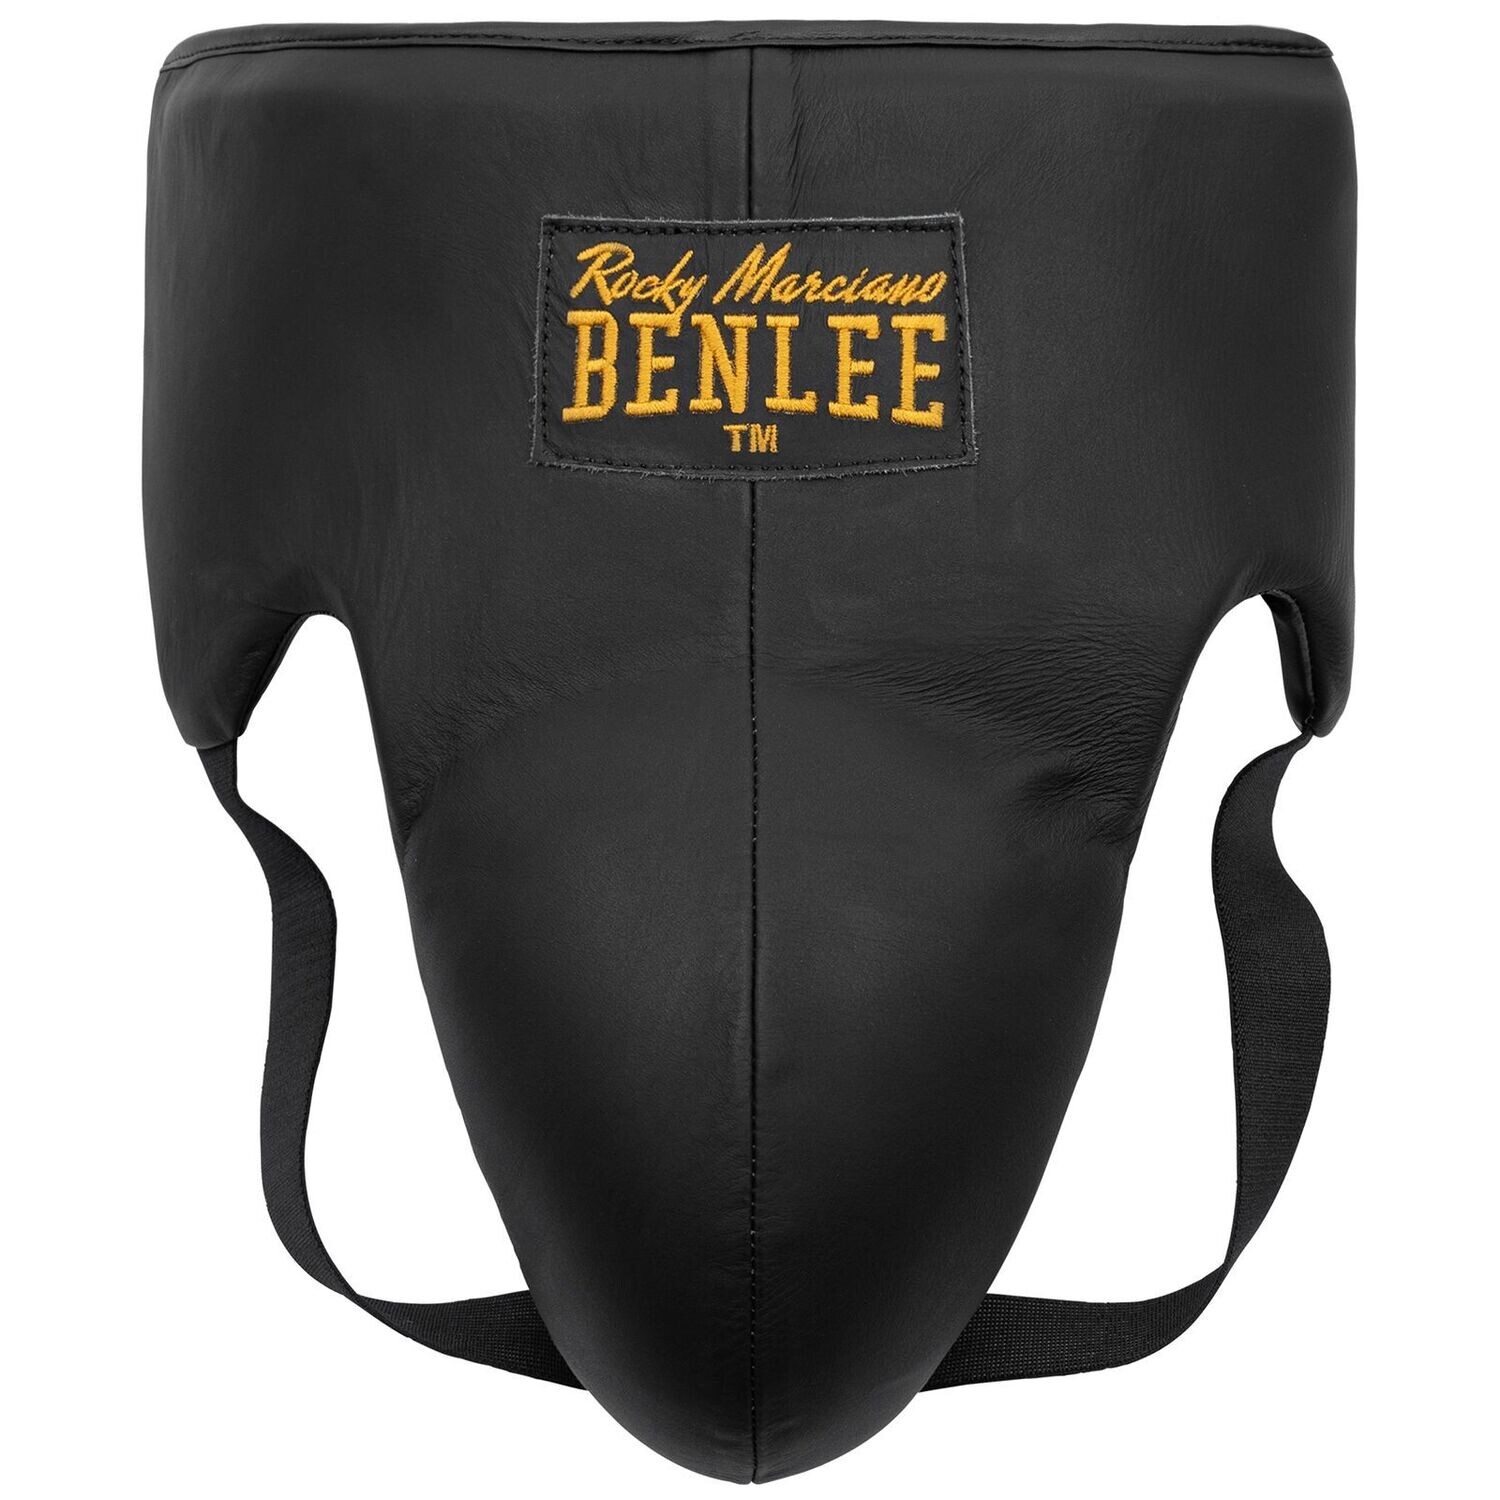 Herren Tiefschutz für Boxer aus Leder von Benlee, Größe: S/M